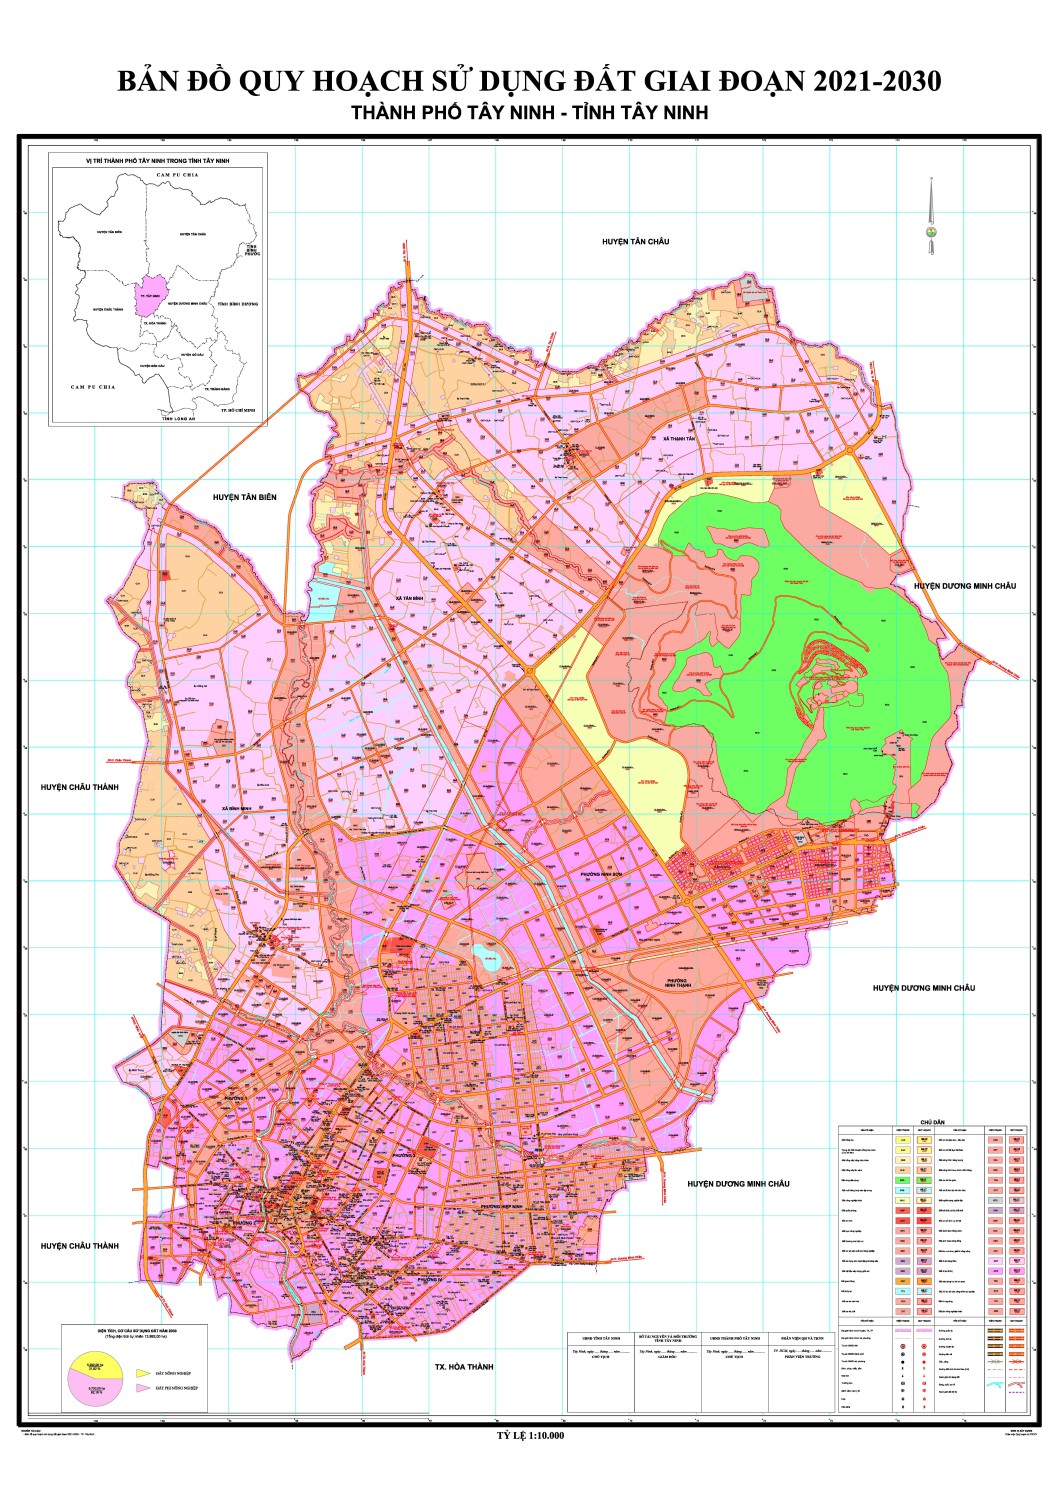 Bản đồ quy hoạch sử dụng đất: Khám phá bản đồ quy hoạch sử dụng đất để thấy rõ những kế hoạch phát triển đất đai trong khu vực của bạn. Bạn sẽ được tổng quan về việc sử dụng đất, địa hình, mật độ dân cư và nhiều thông tin hữu ích khác.